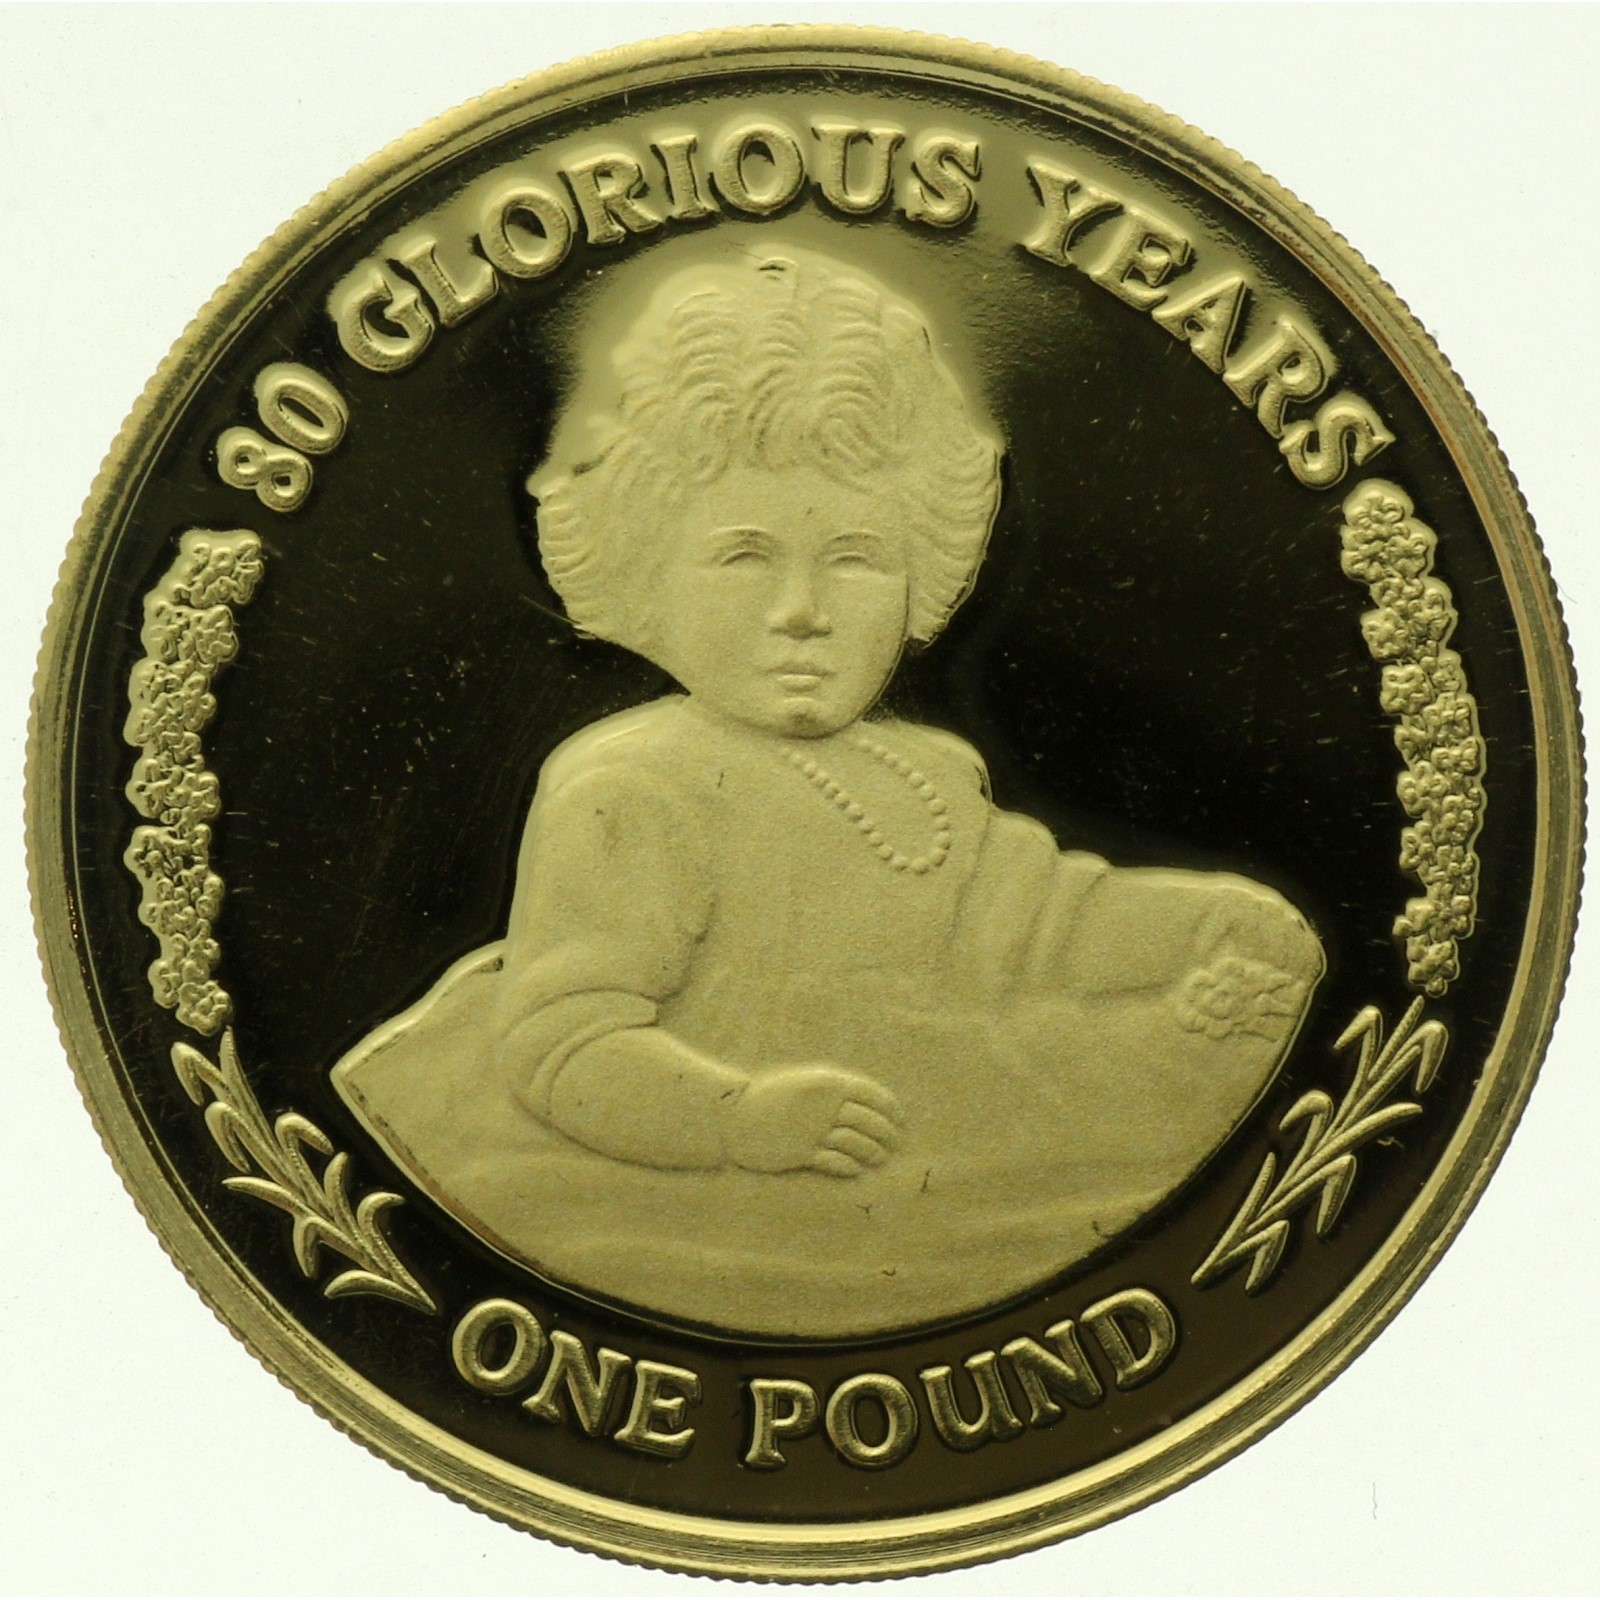 Gibraltar - 1 pound - 2006 - Glorious Years - 1/4oz